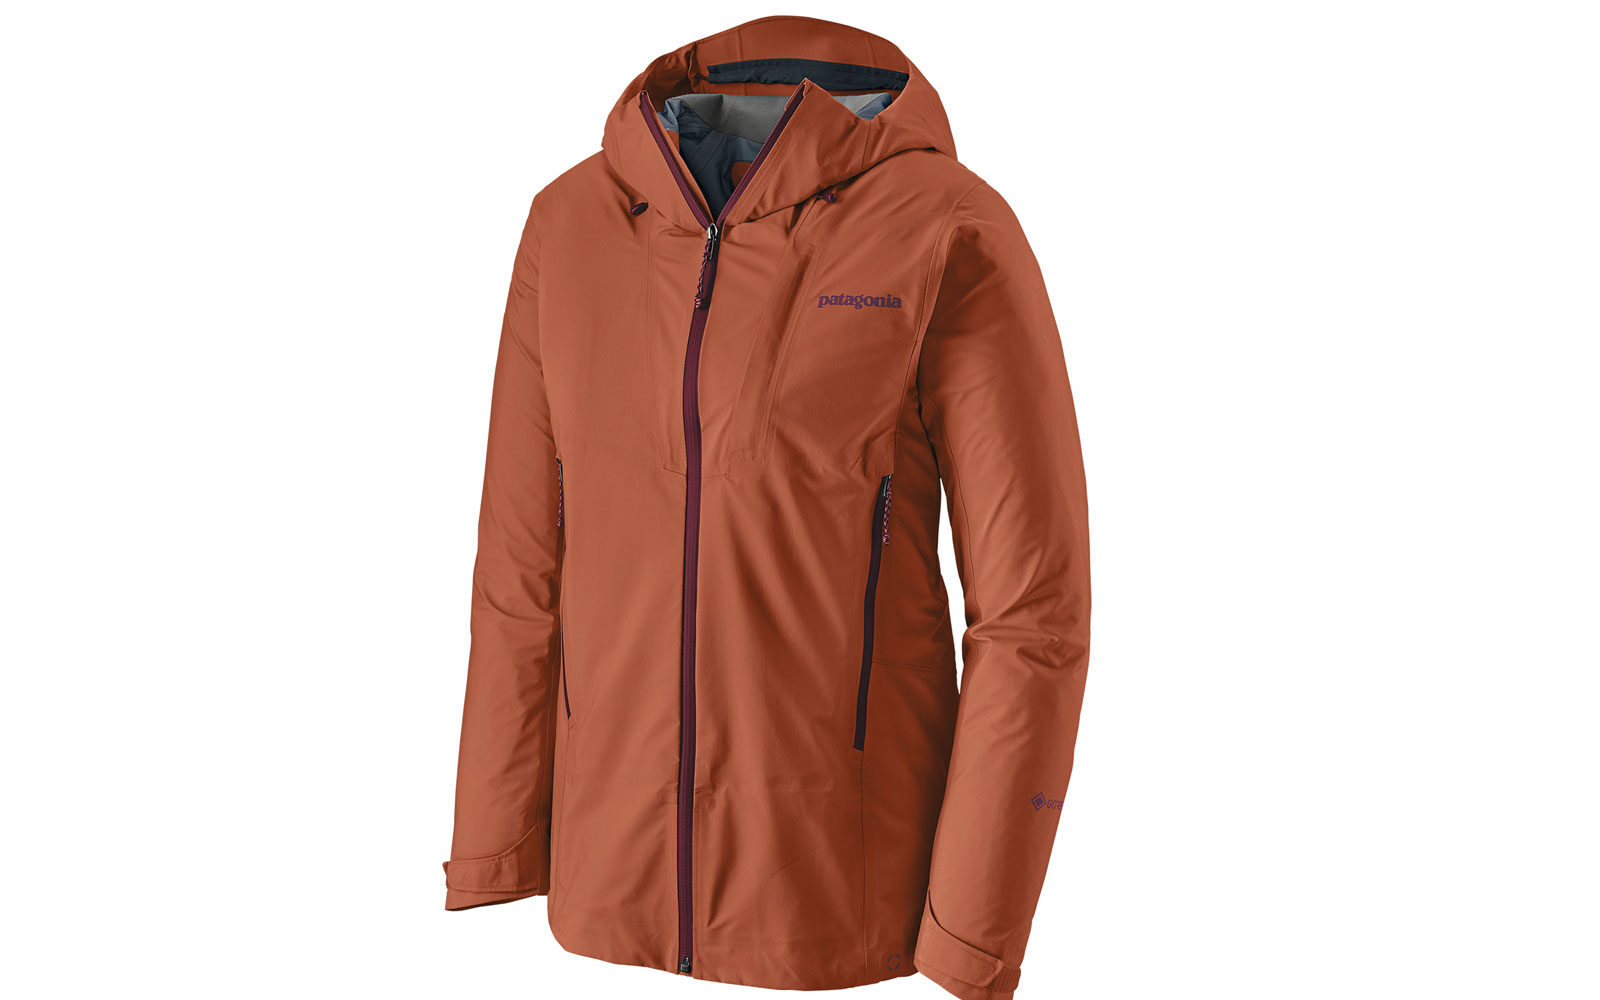 Patagonia W’s Ascensionist Jacket, protezione e comfort, tessuto esterno super-traspirante, leggera (323 grammi) e comprimibile. Euro 450